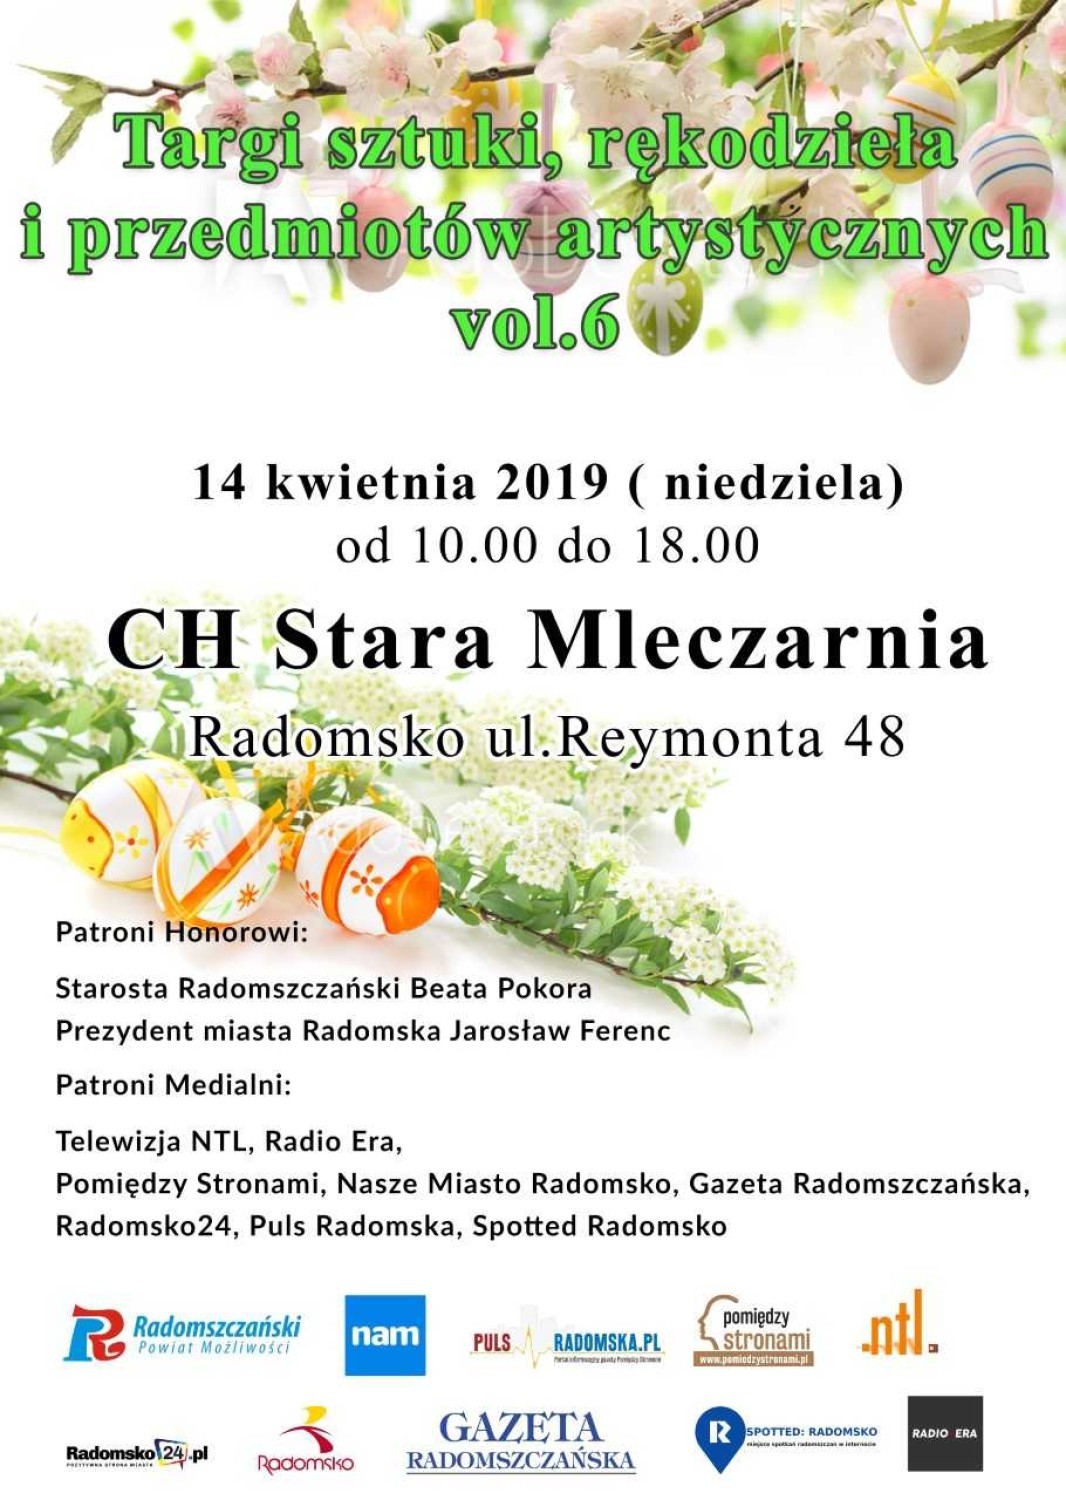 Wielkanocne Targi Rękodzieła w Radomsku. Edycja 2019 - Zapraszamy //spotradomsko.pl